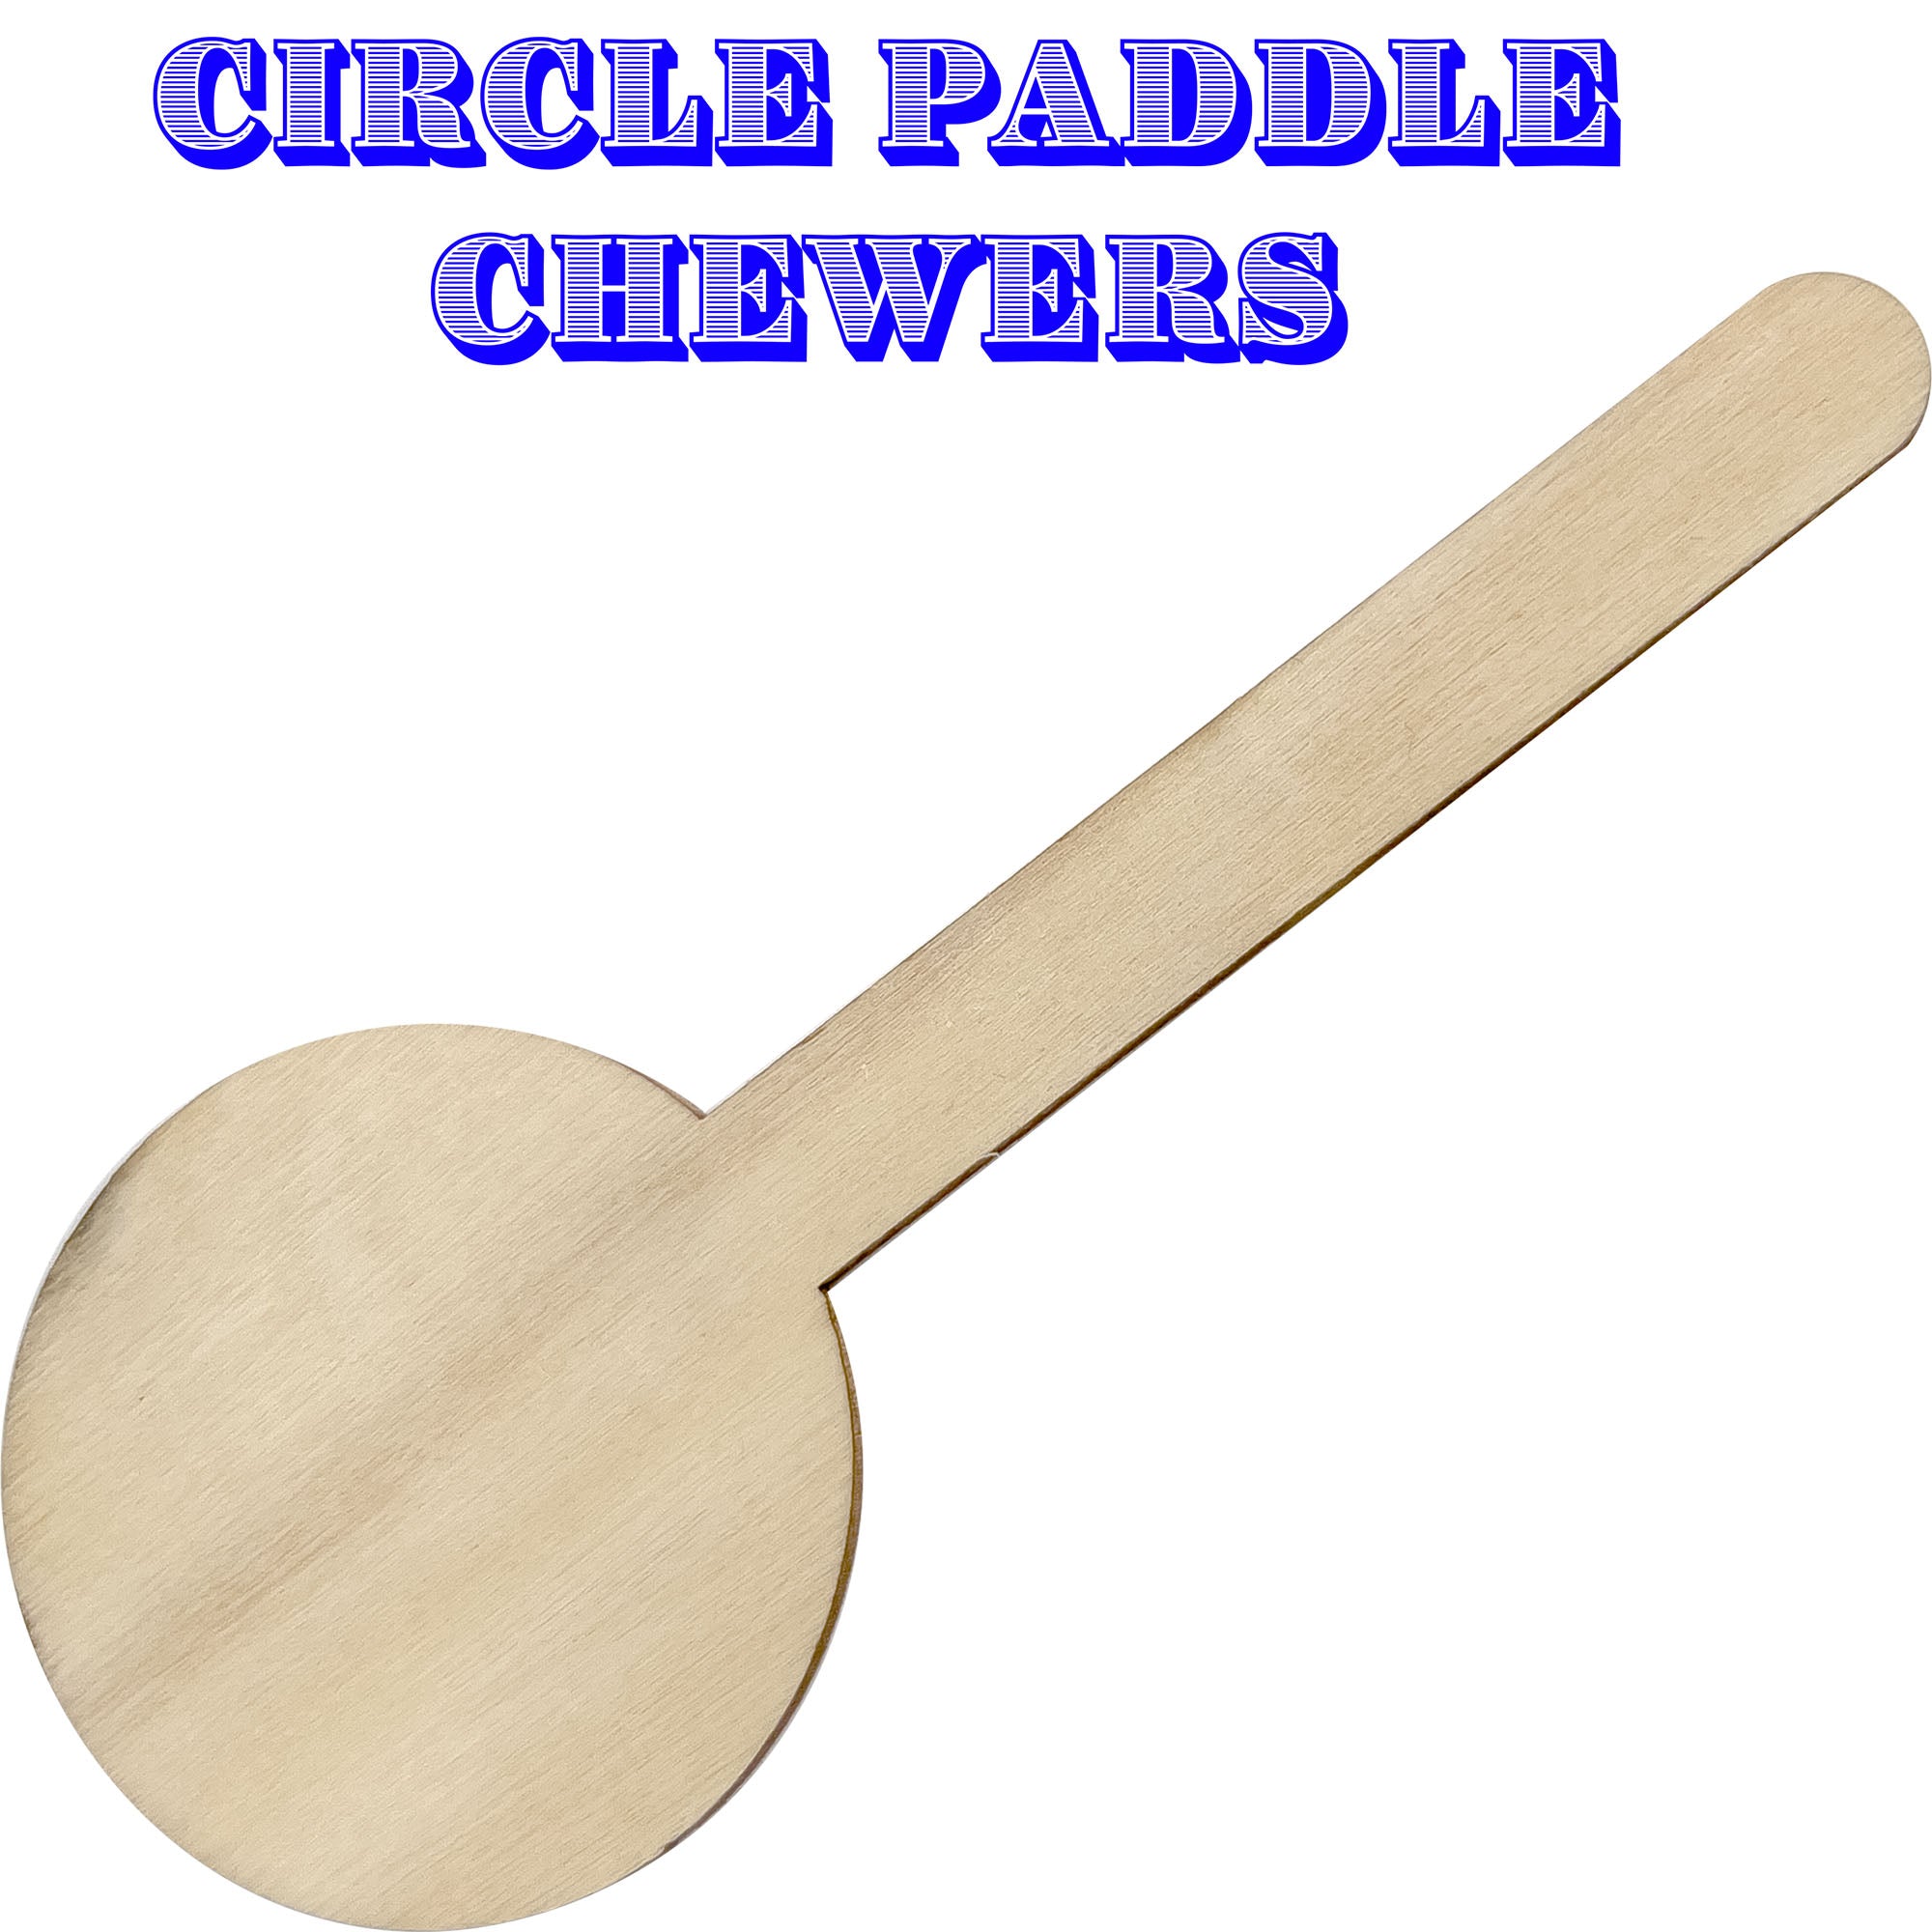 2060 Pk6 Wood Paddle Chewers